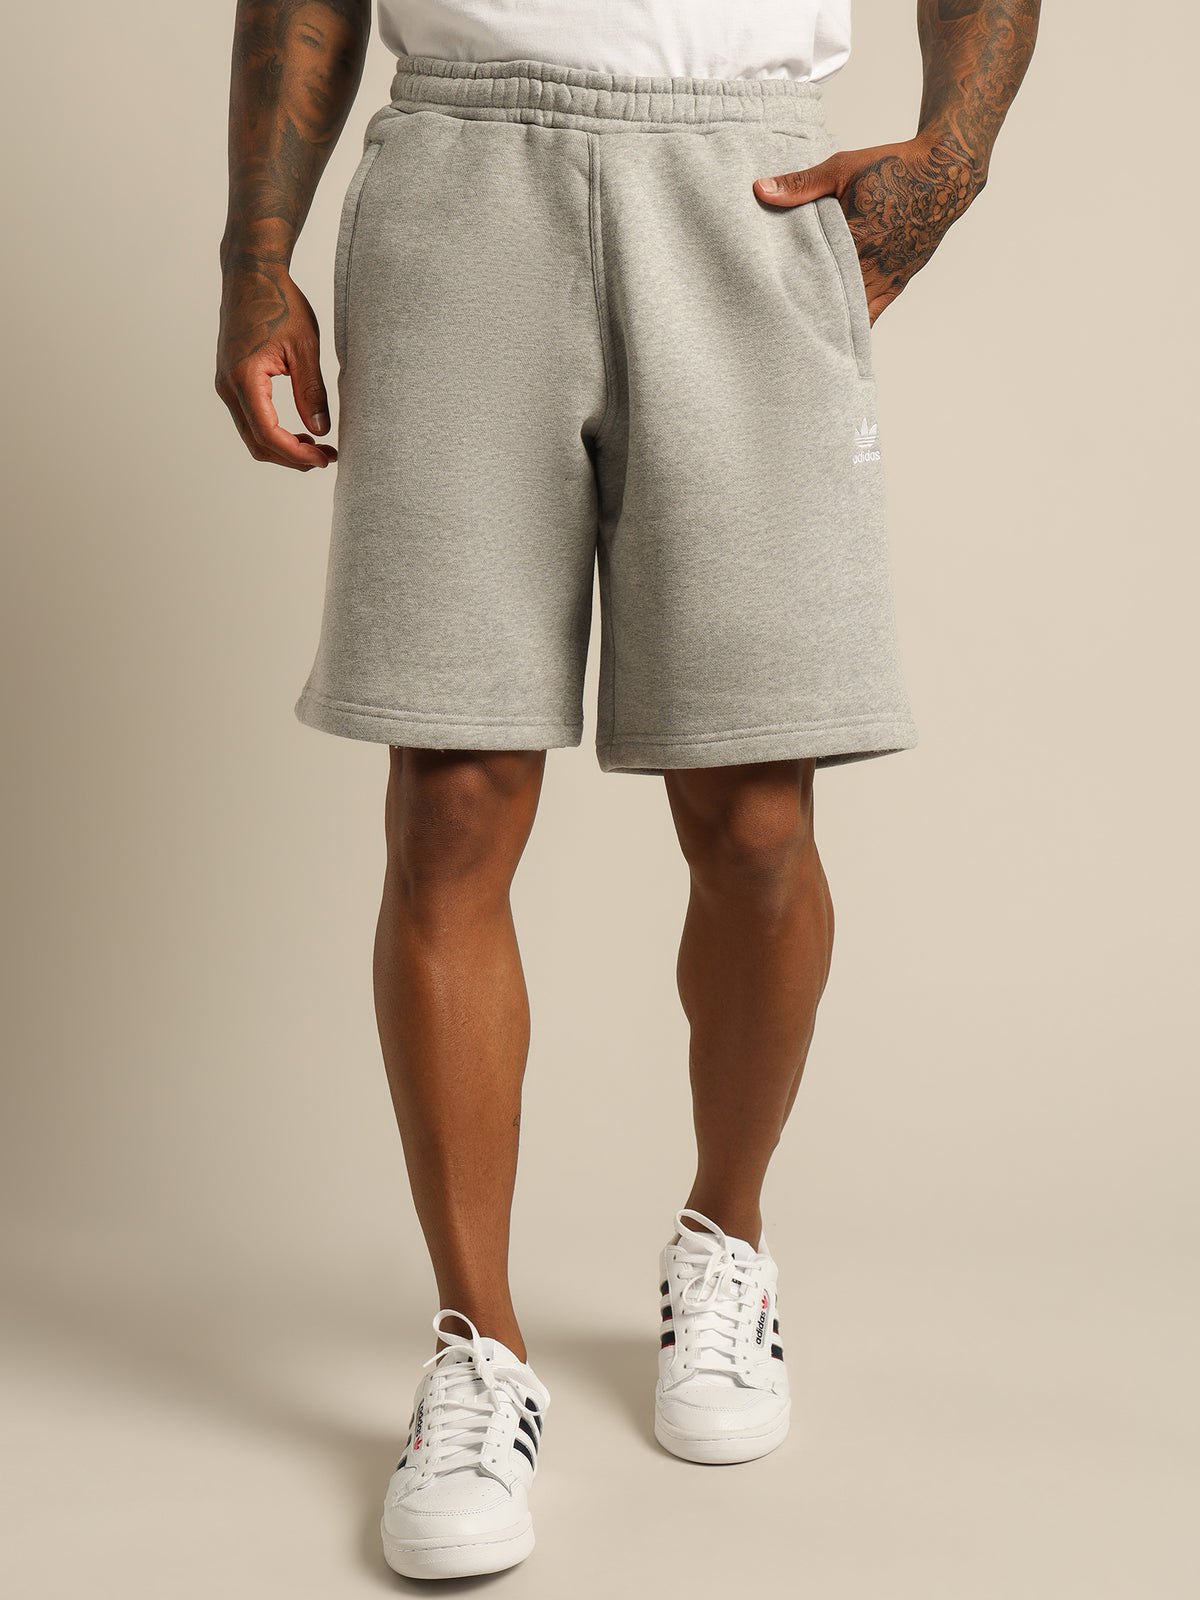 Adicolor Essentials Trefoil Shorts in Medium Grey Heather